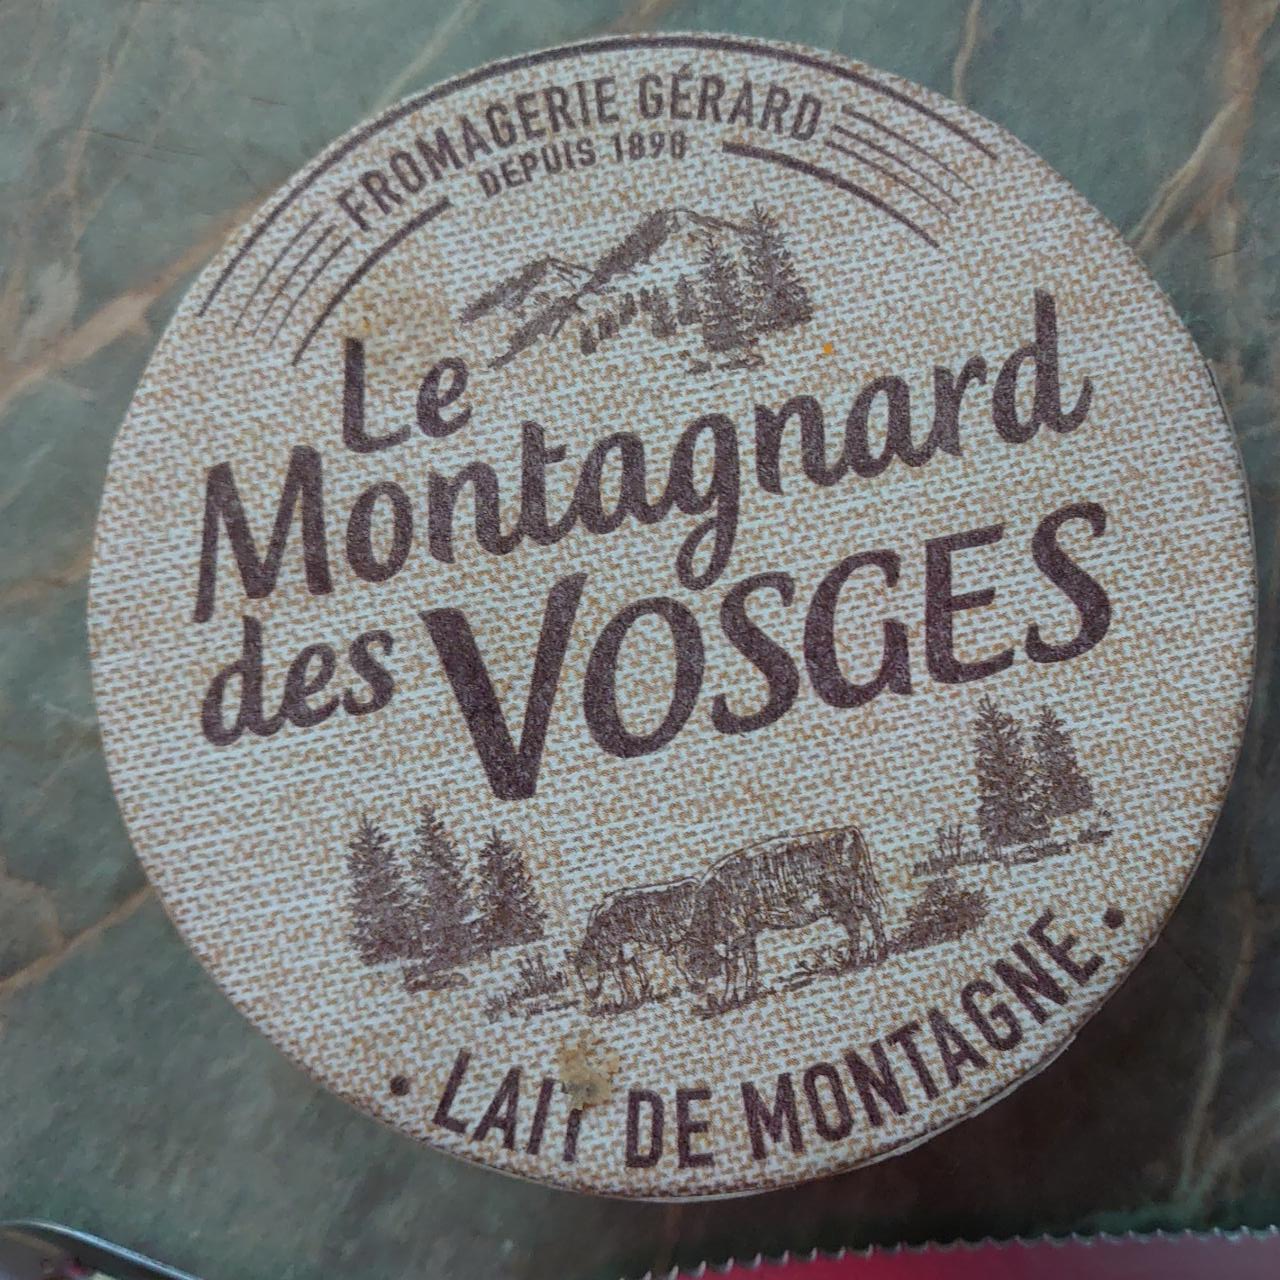 Fotografie - Le Montagnard des Vosges Fromagerie Gérard